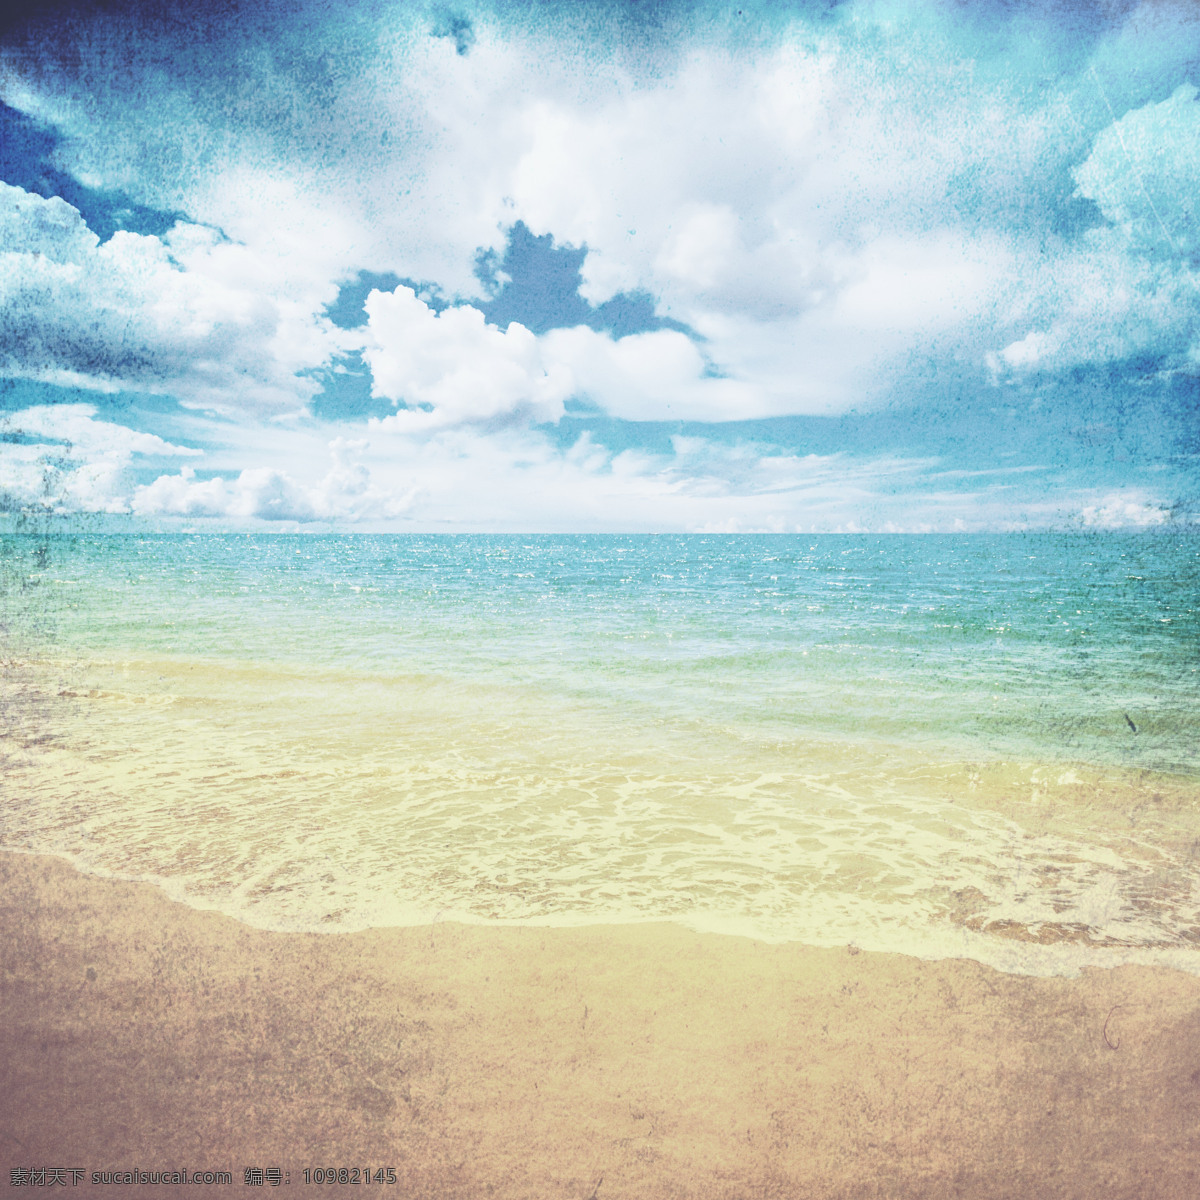 蓝天 下 海滩 美景 夏日蓝色海洋 天空 蓝天白云 海洋 大海 海浪 沙滩 沙子 风景 风景图片 高清图片 大海图片